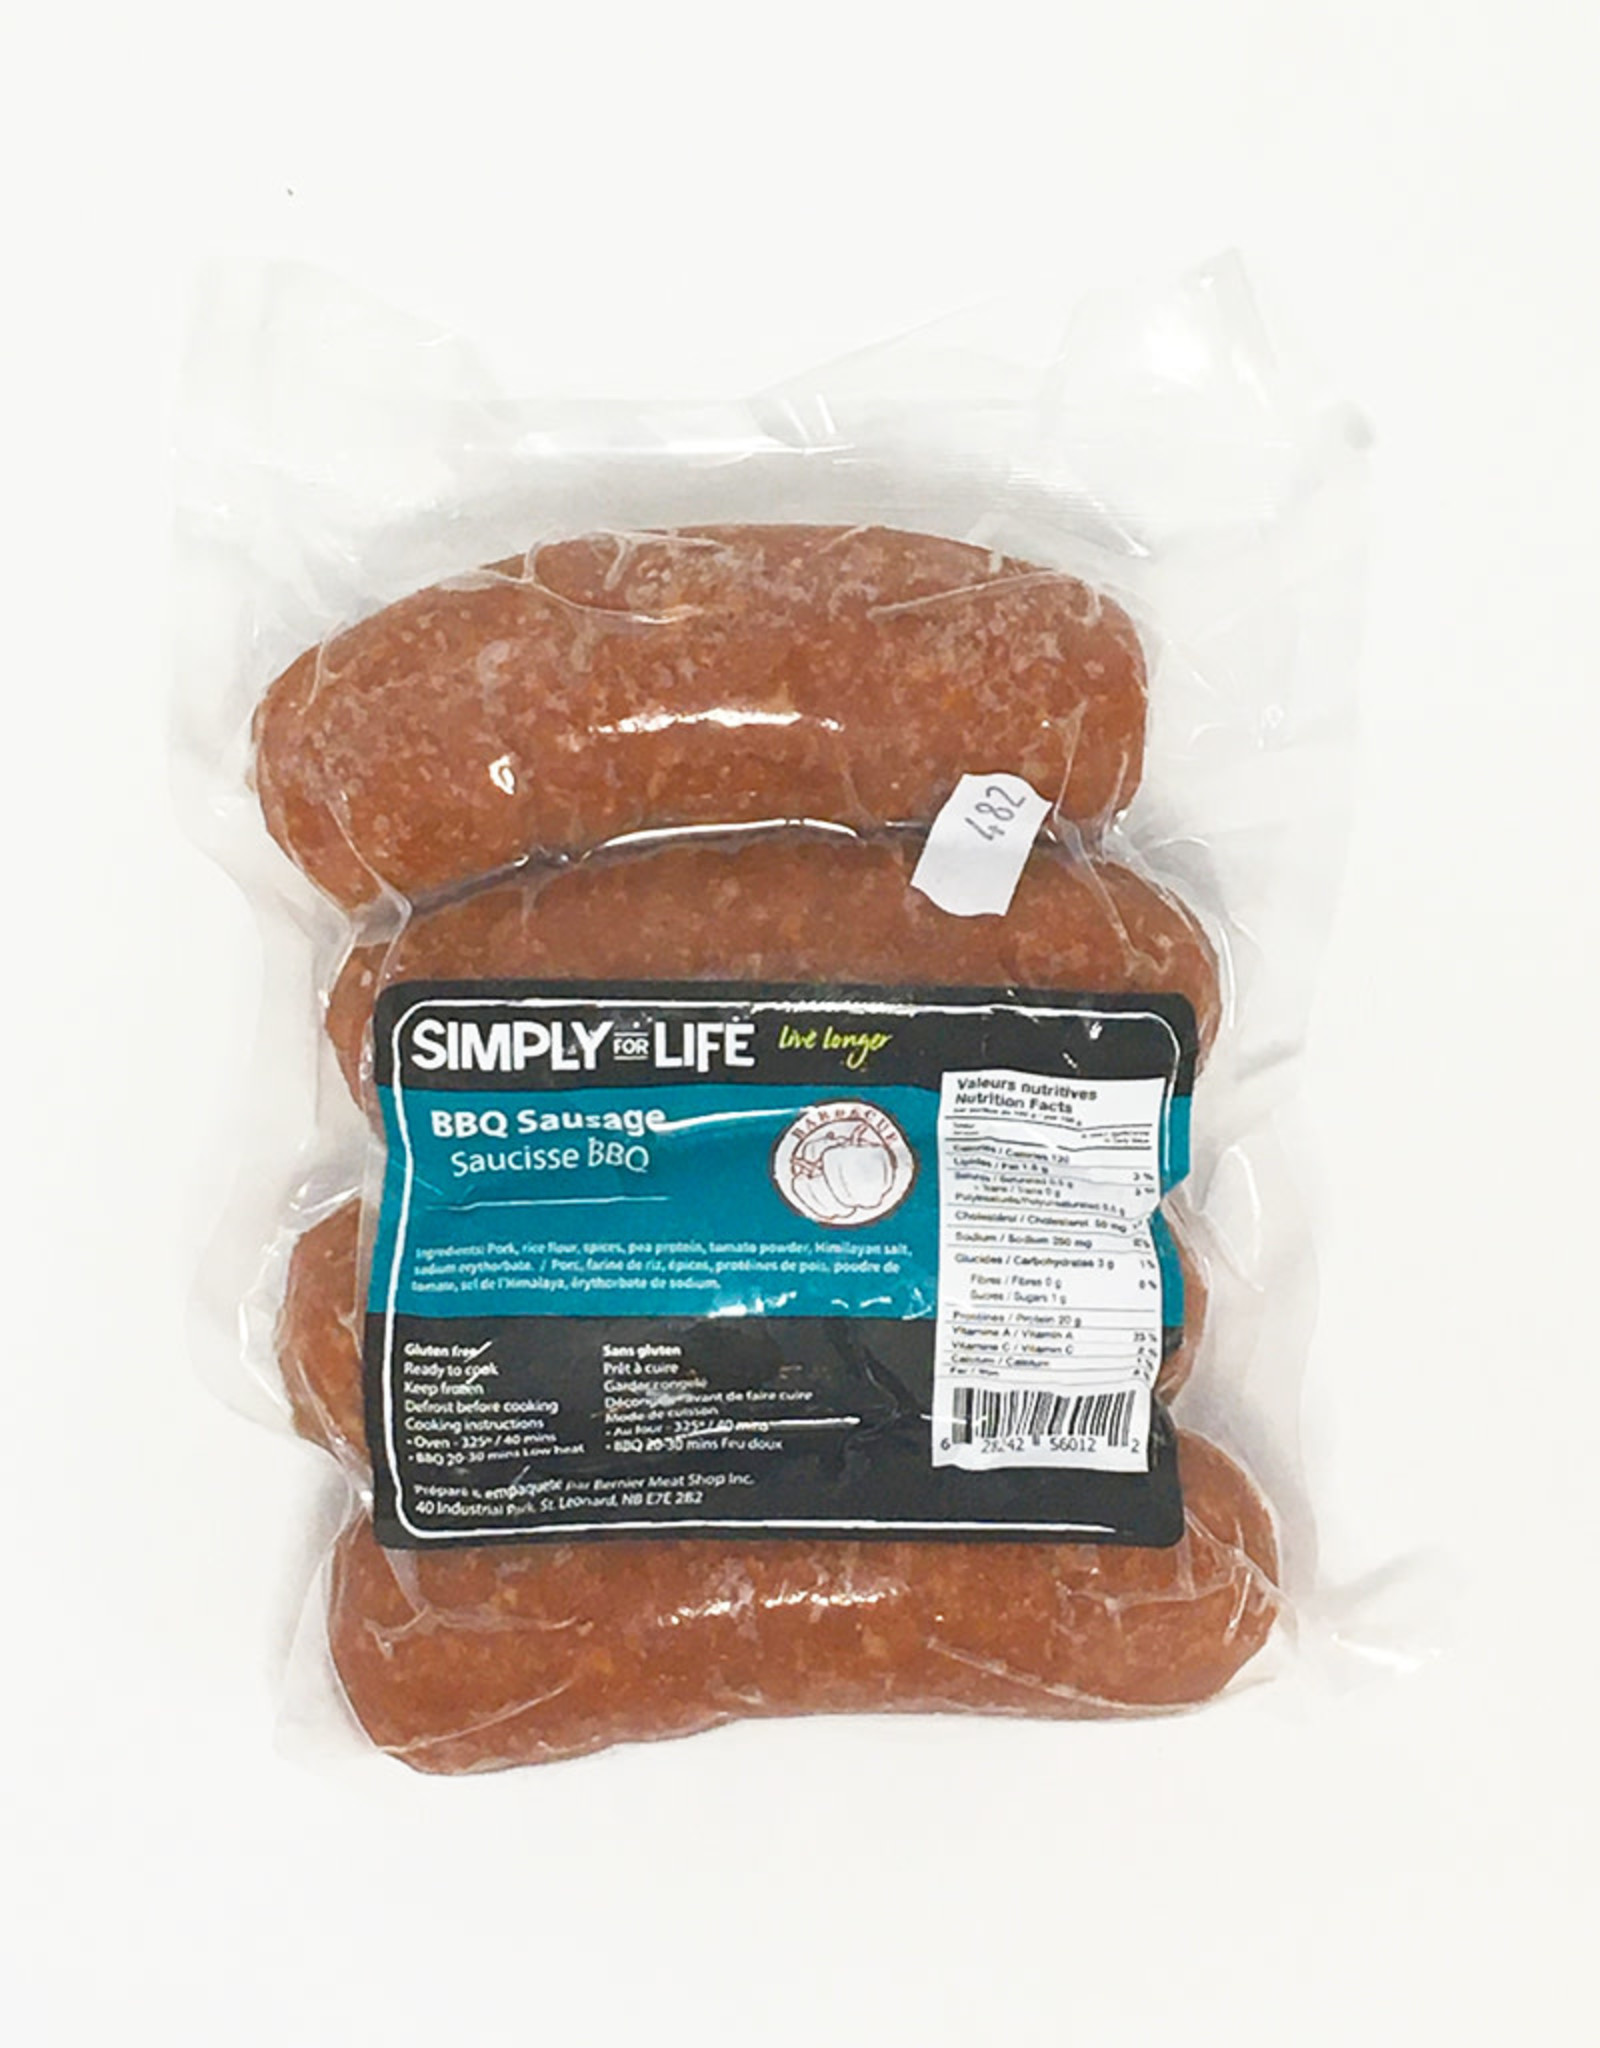 Simply For Life Simply For Life - Saucisses de Porc, BBQ (400g)